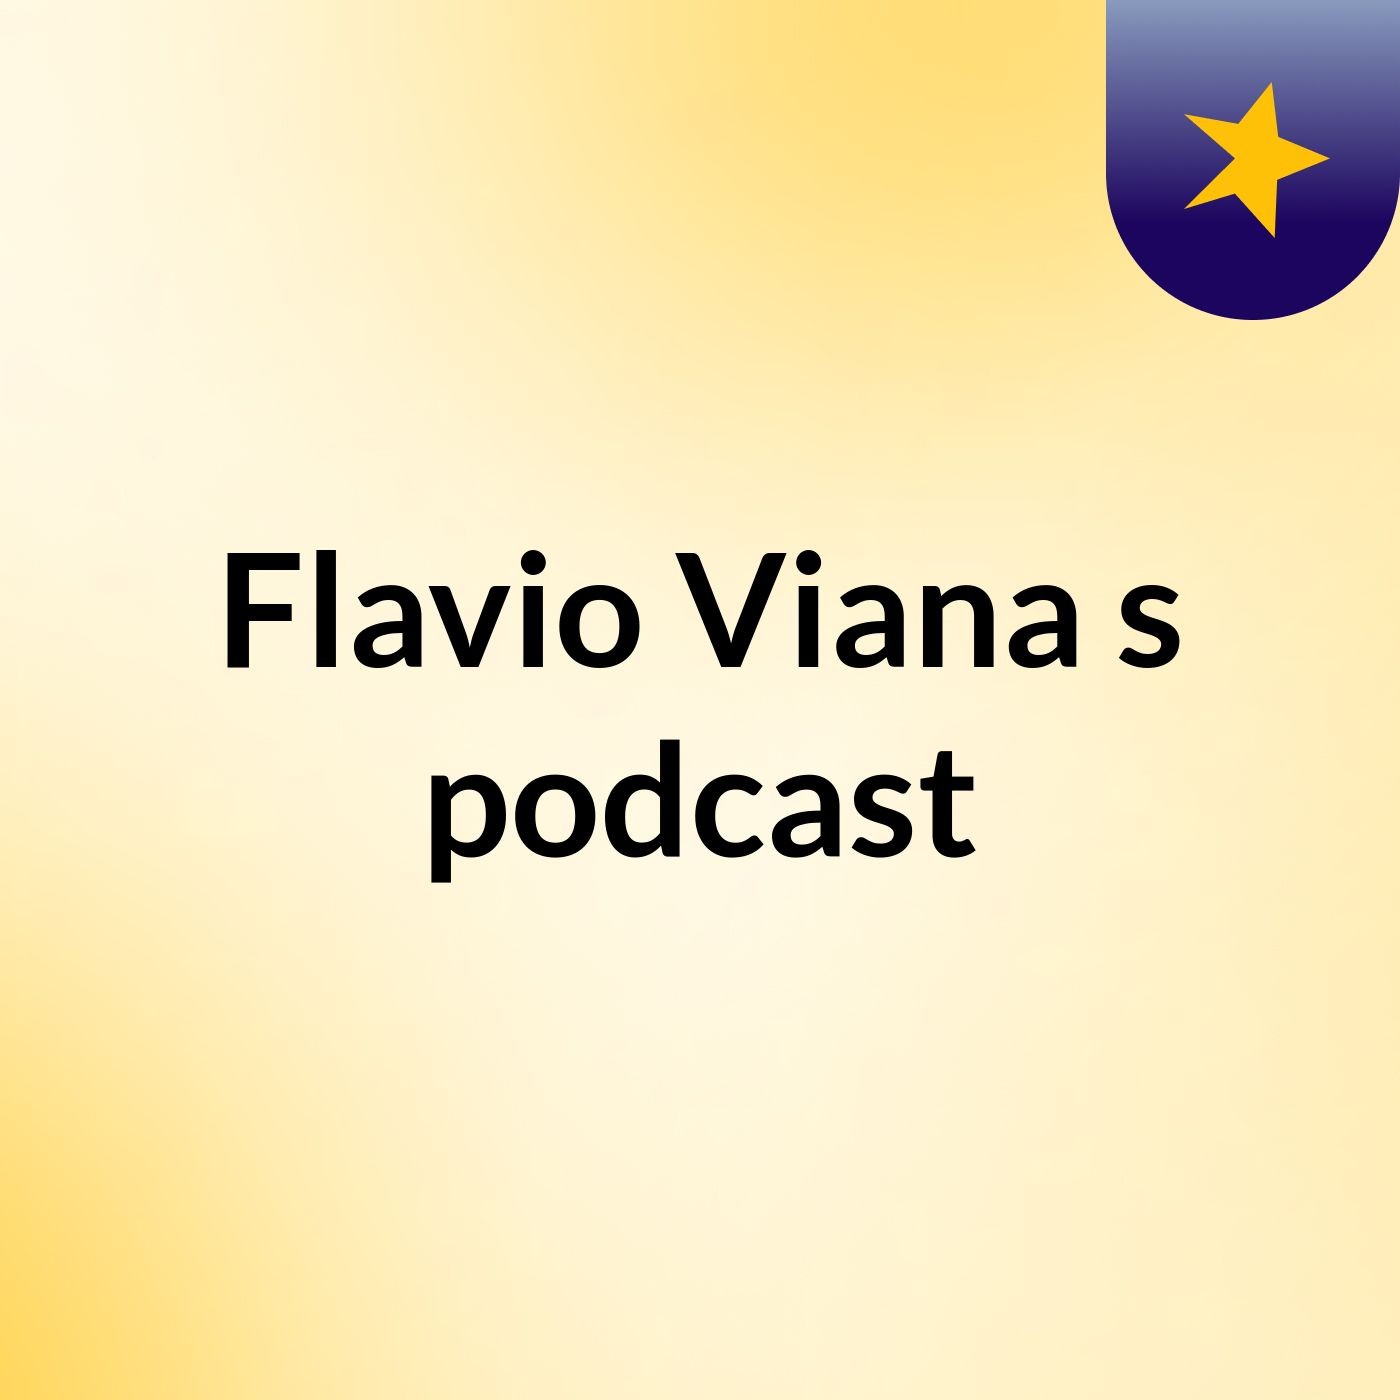 Flavio Viana's podcast